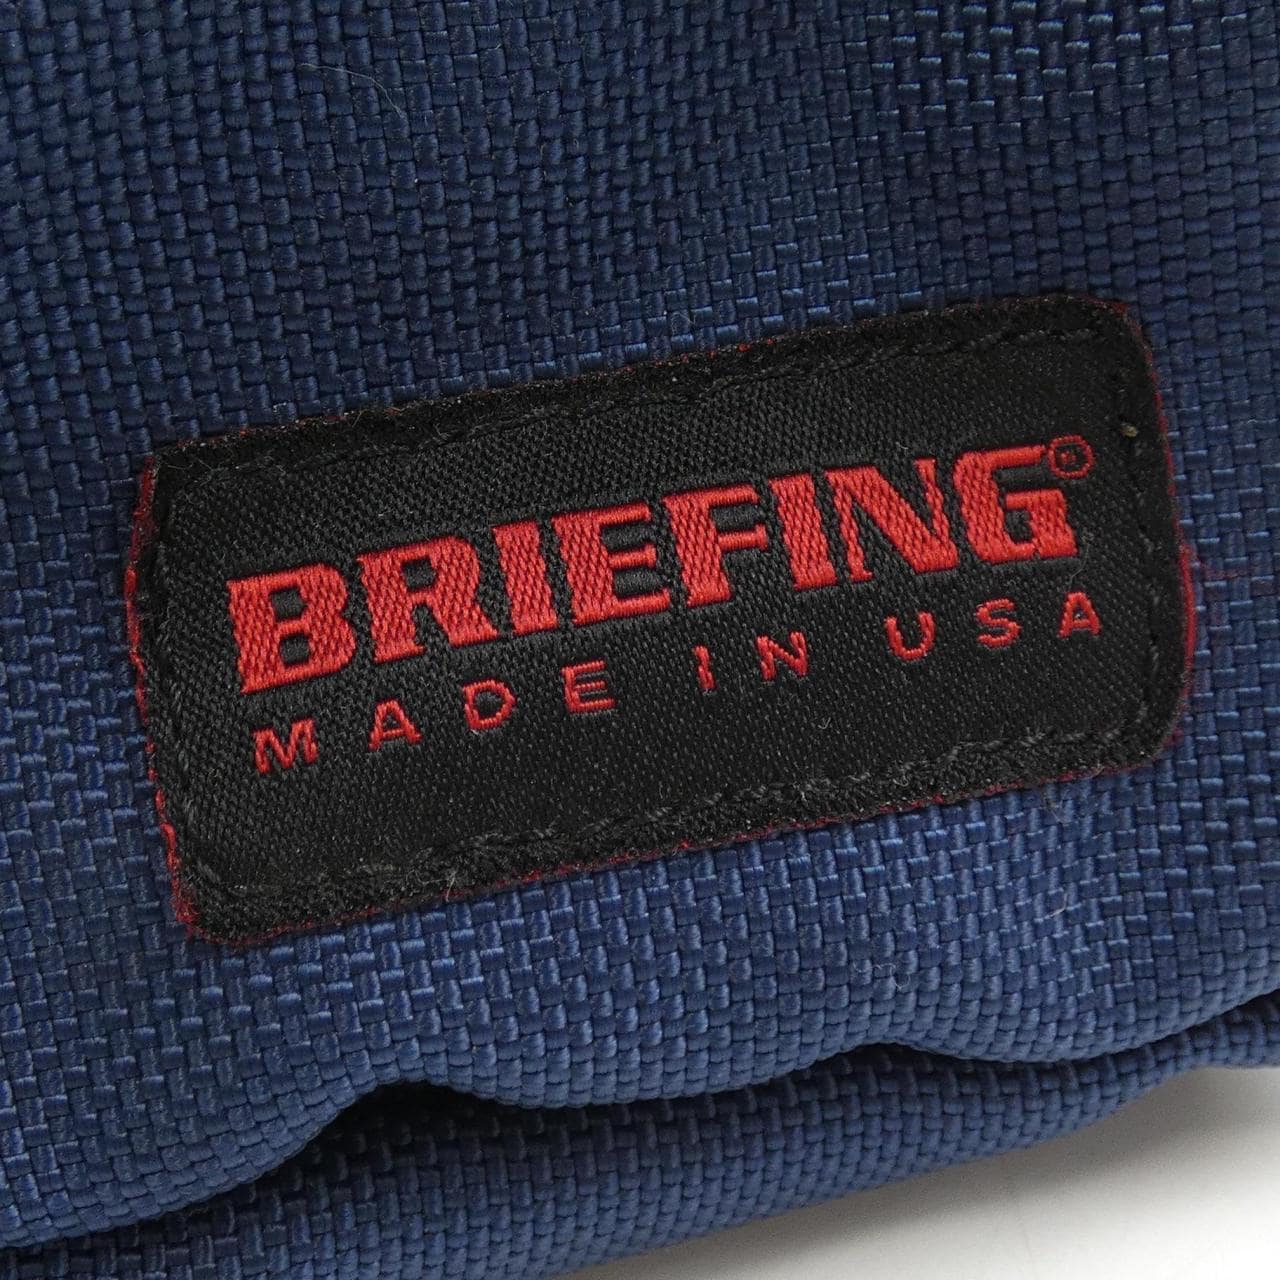 BRIEFING BAG